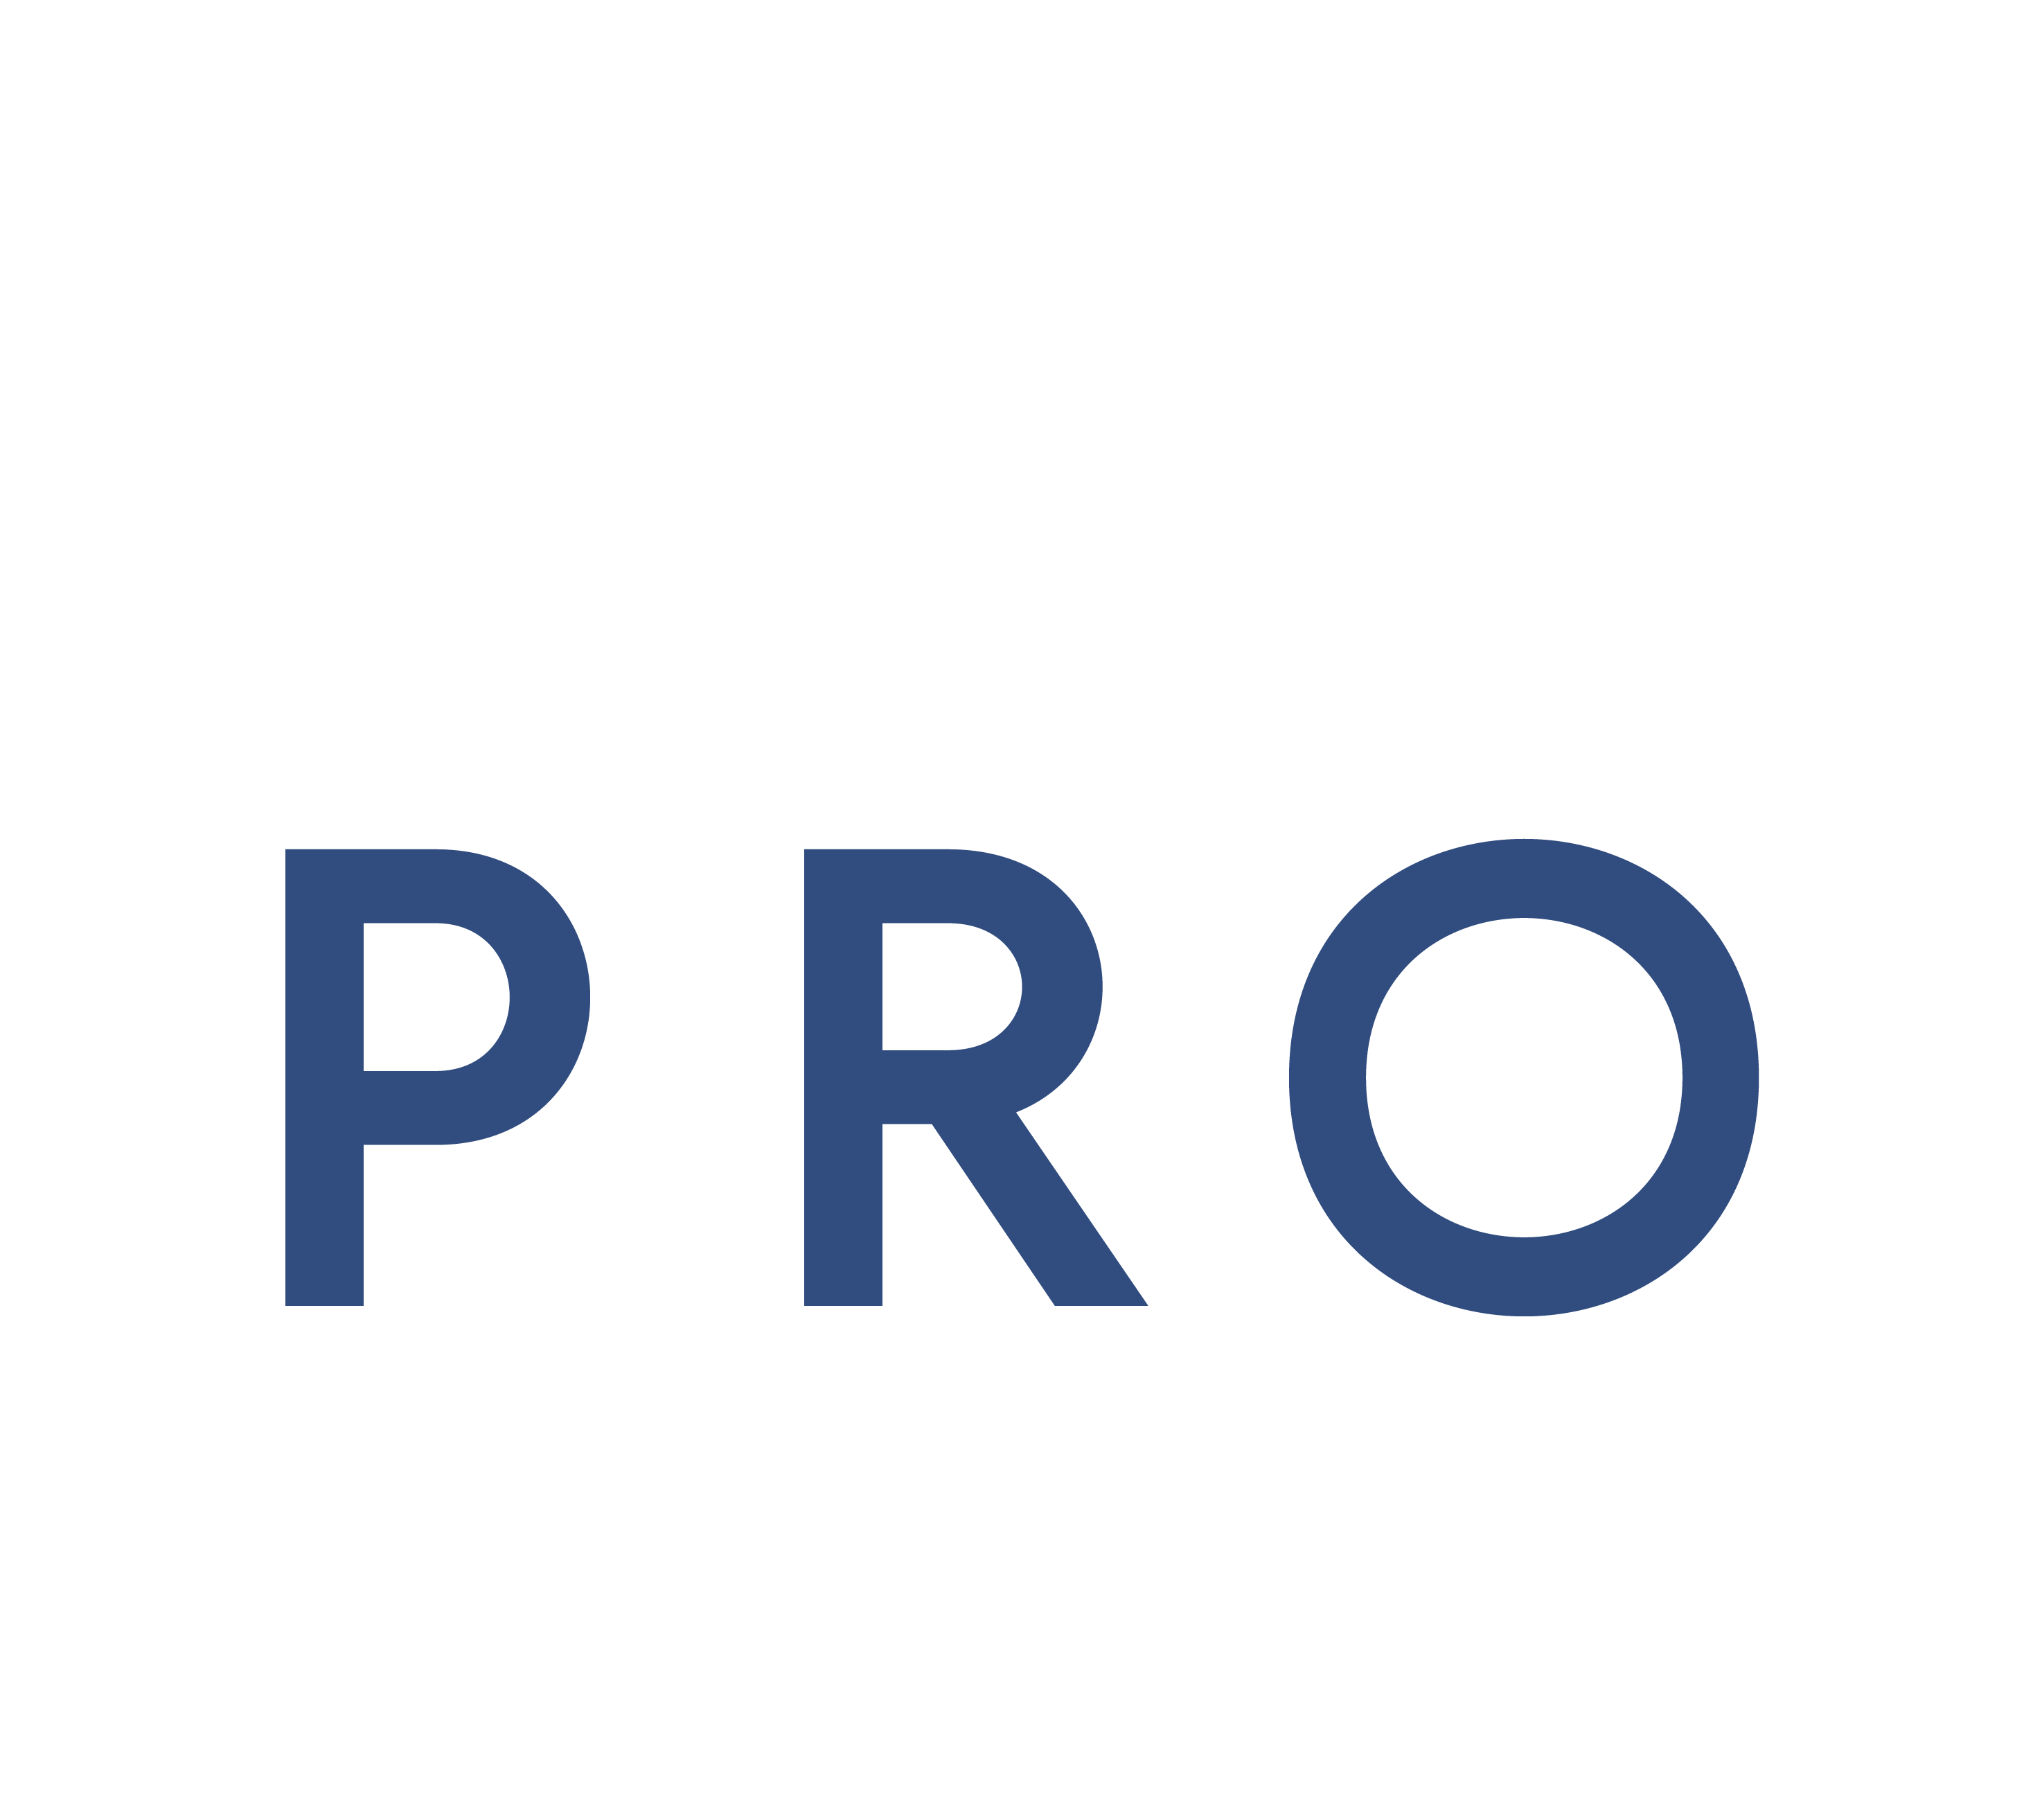 Wikipro